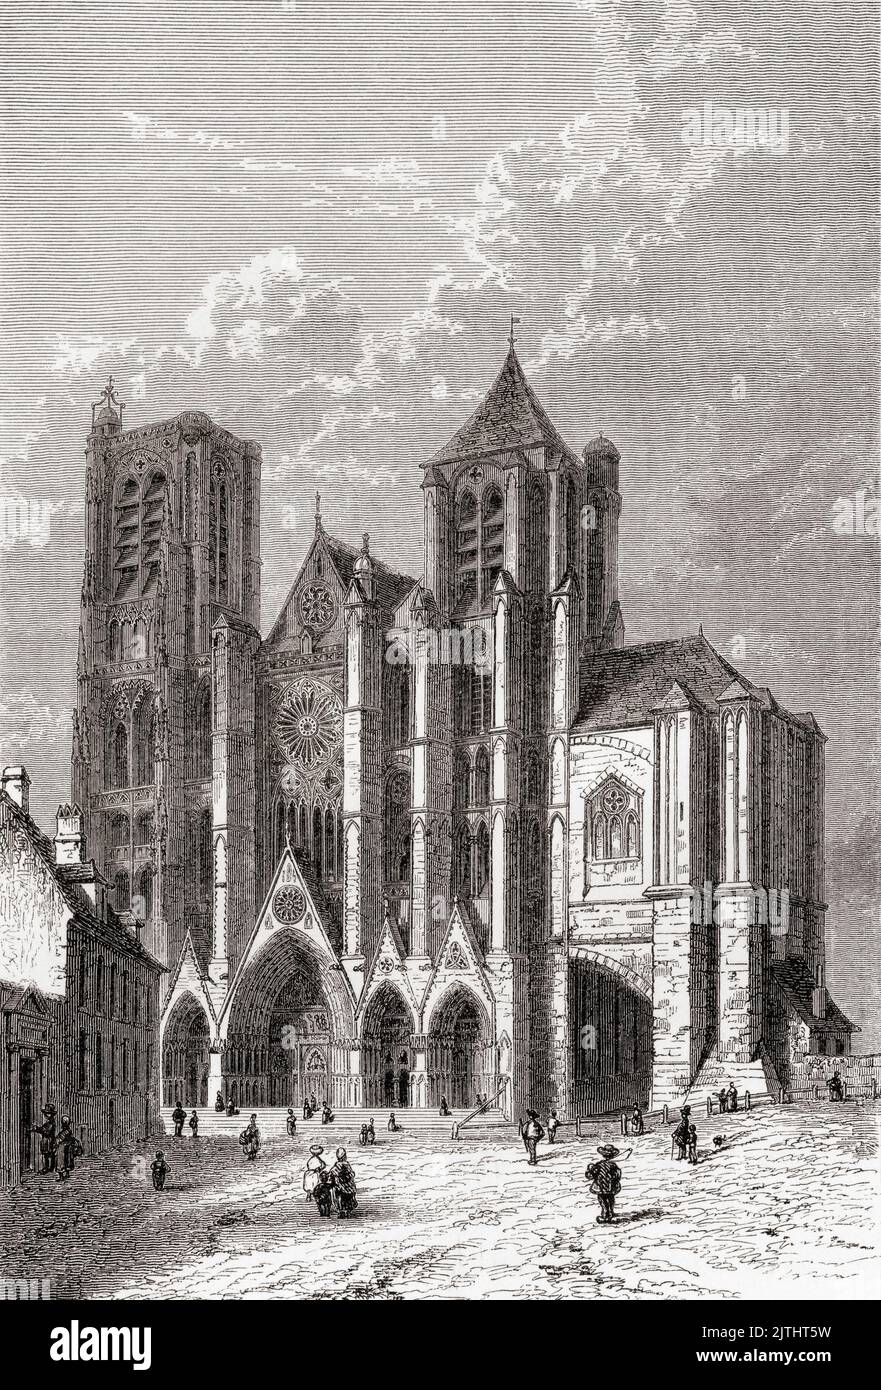 Cattedrale di Bourges, aka Santo Stefano di Bourges, Bourges, Francia, visto qui nel 19th ° secolo. La costruzione del chuch ha avuto luogo tra il 1195 e il 1230 ed è in stile architettonico alto gotico e romanico. Da Les Plus Belles Eglises du Monde, pubblicato nel 1861. Foto Stock